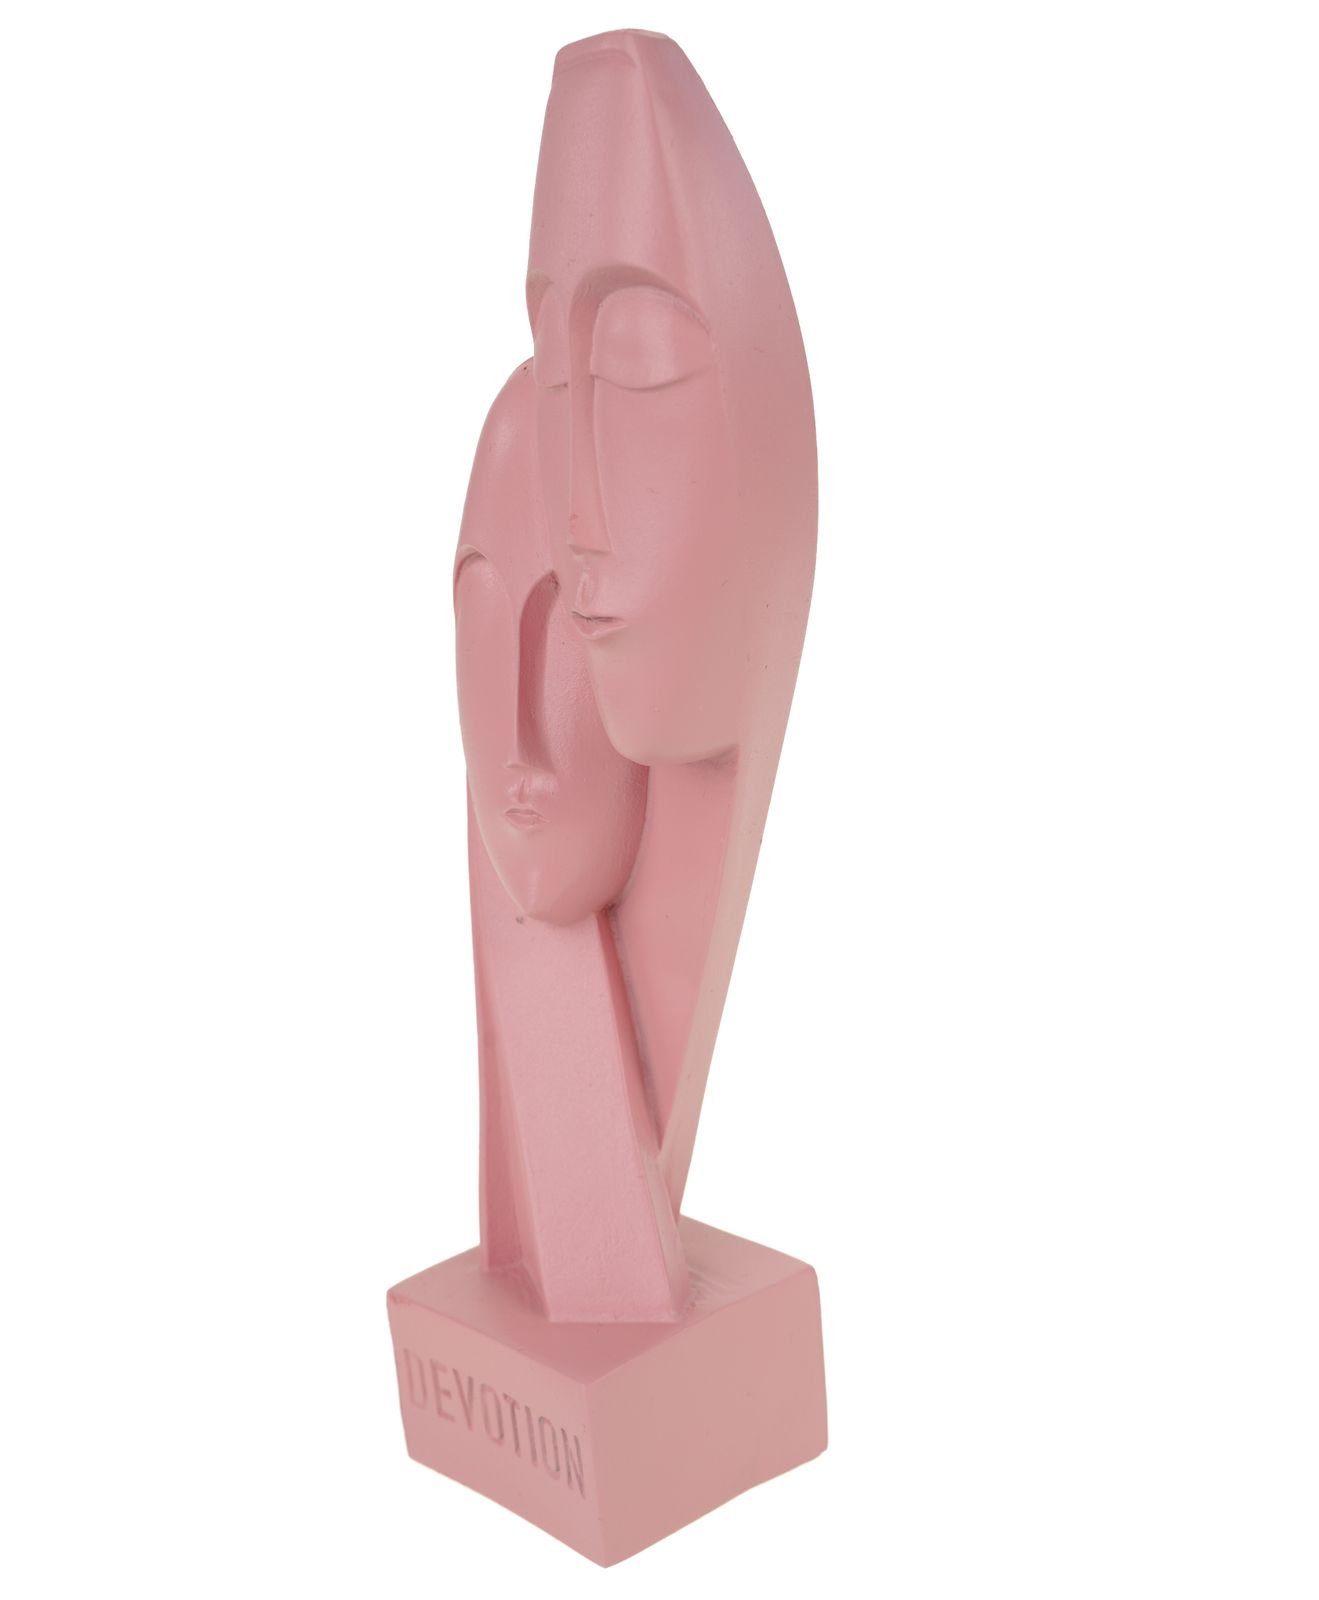 Kremers Schatzkiste Dekofigur Liebe Kunst Art Skulptur Alabaster Devotion Figur 21 cm lachsfarben Figurine Hingabe